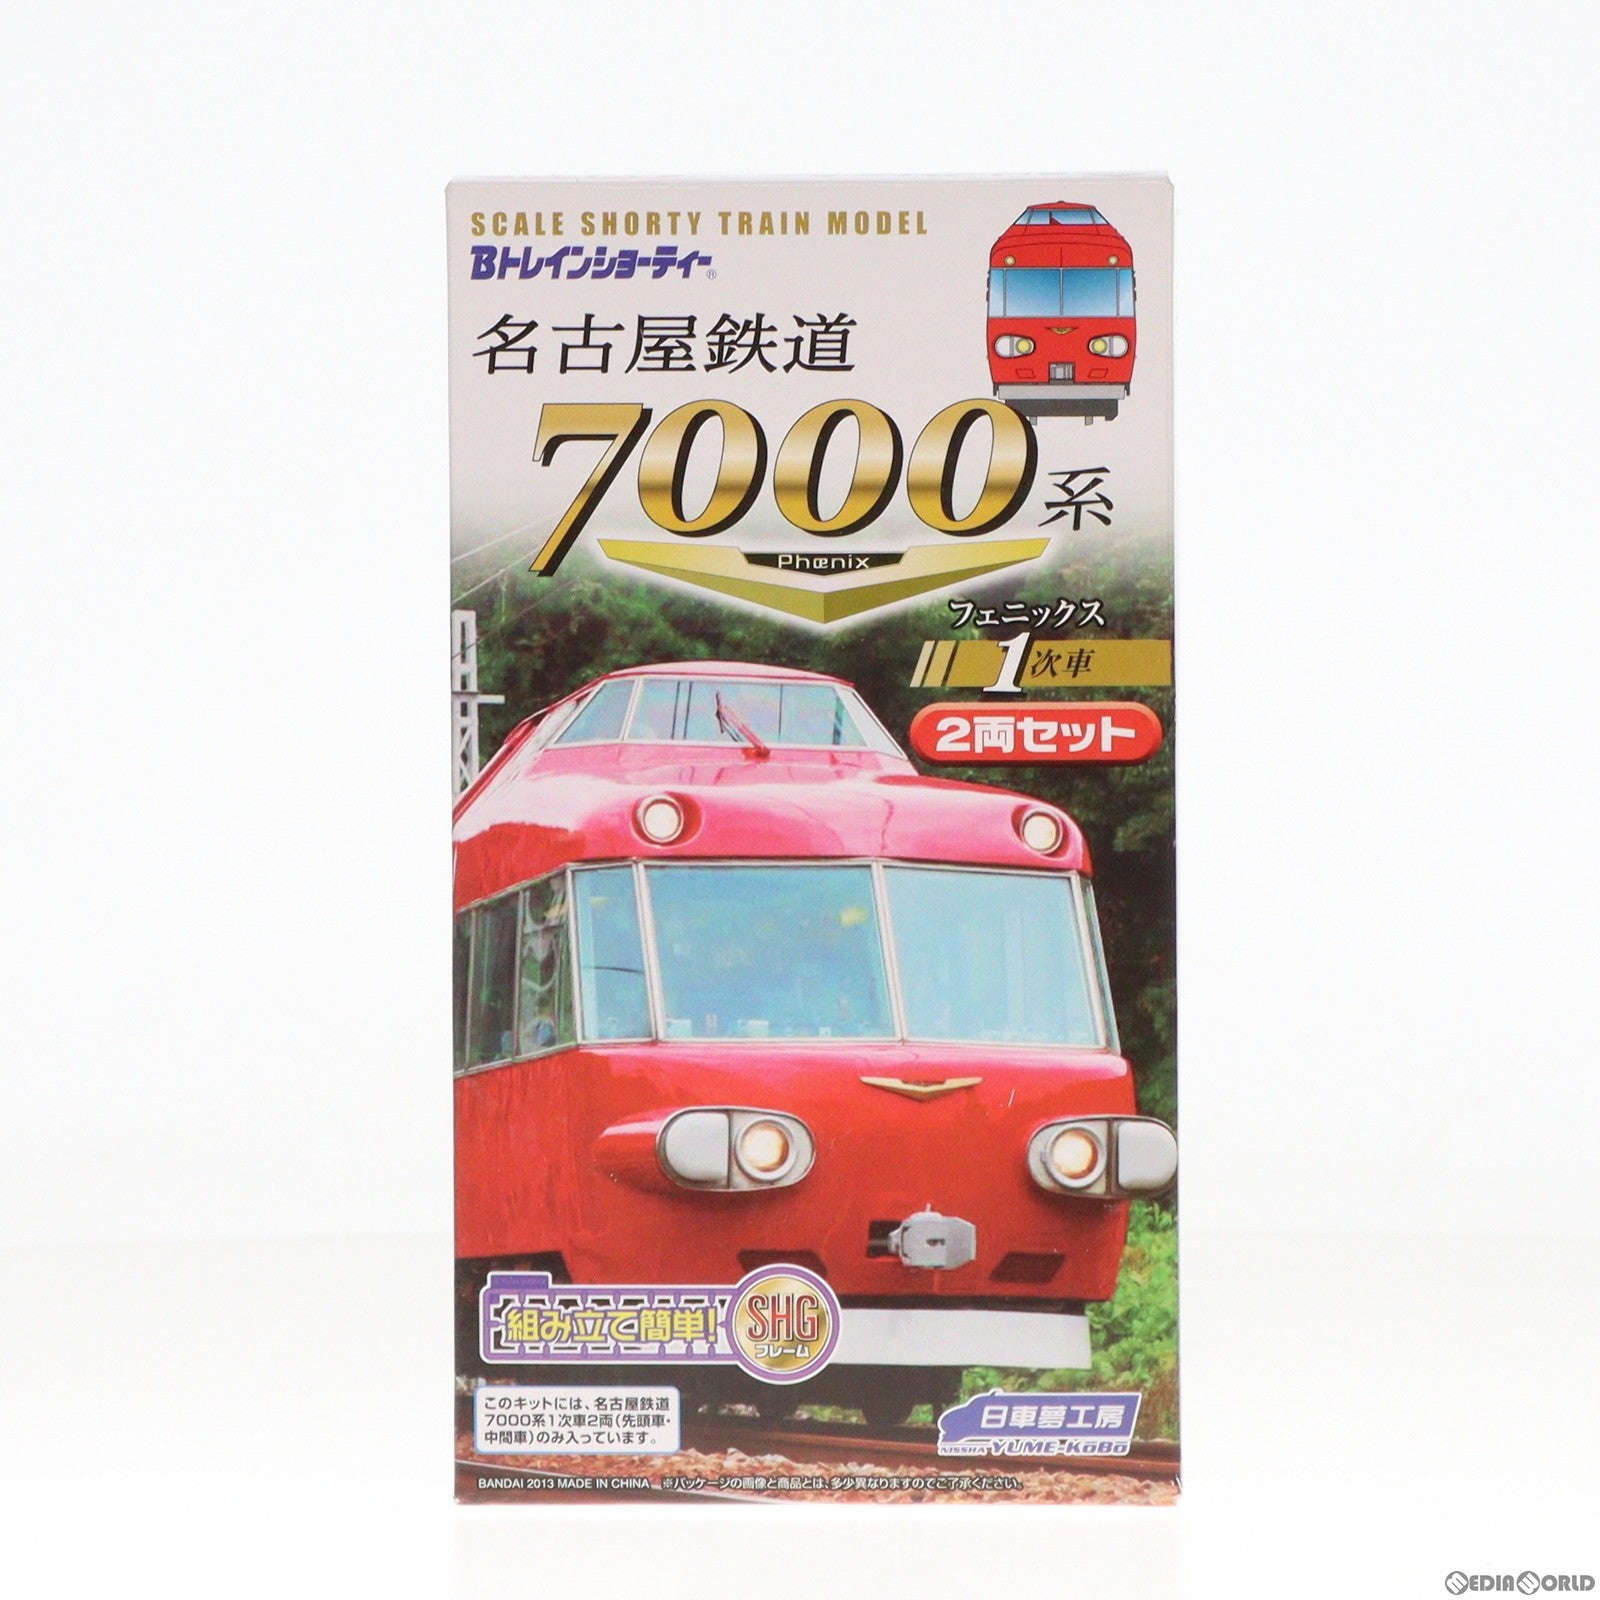 【中古即納】[RWM]2194281 Bトレインショーティー 名古屋鉄道7000系 フェニックス 1次車 2両セット 組み立てキット Nゲージ 鉄道模型(20130806)